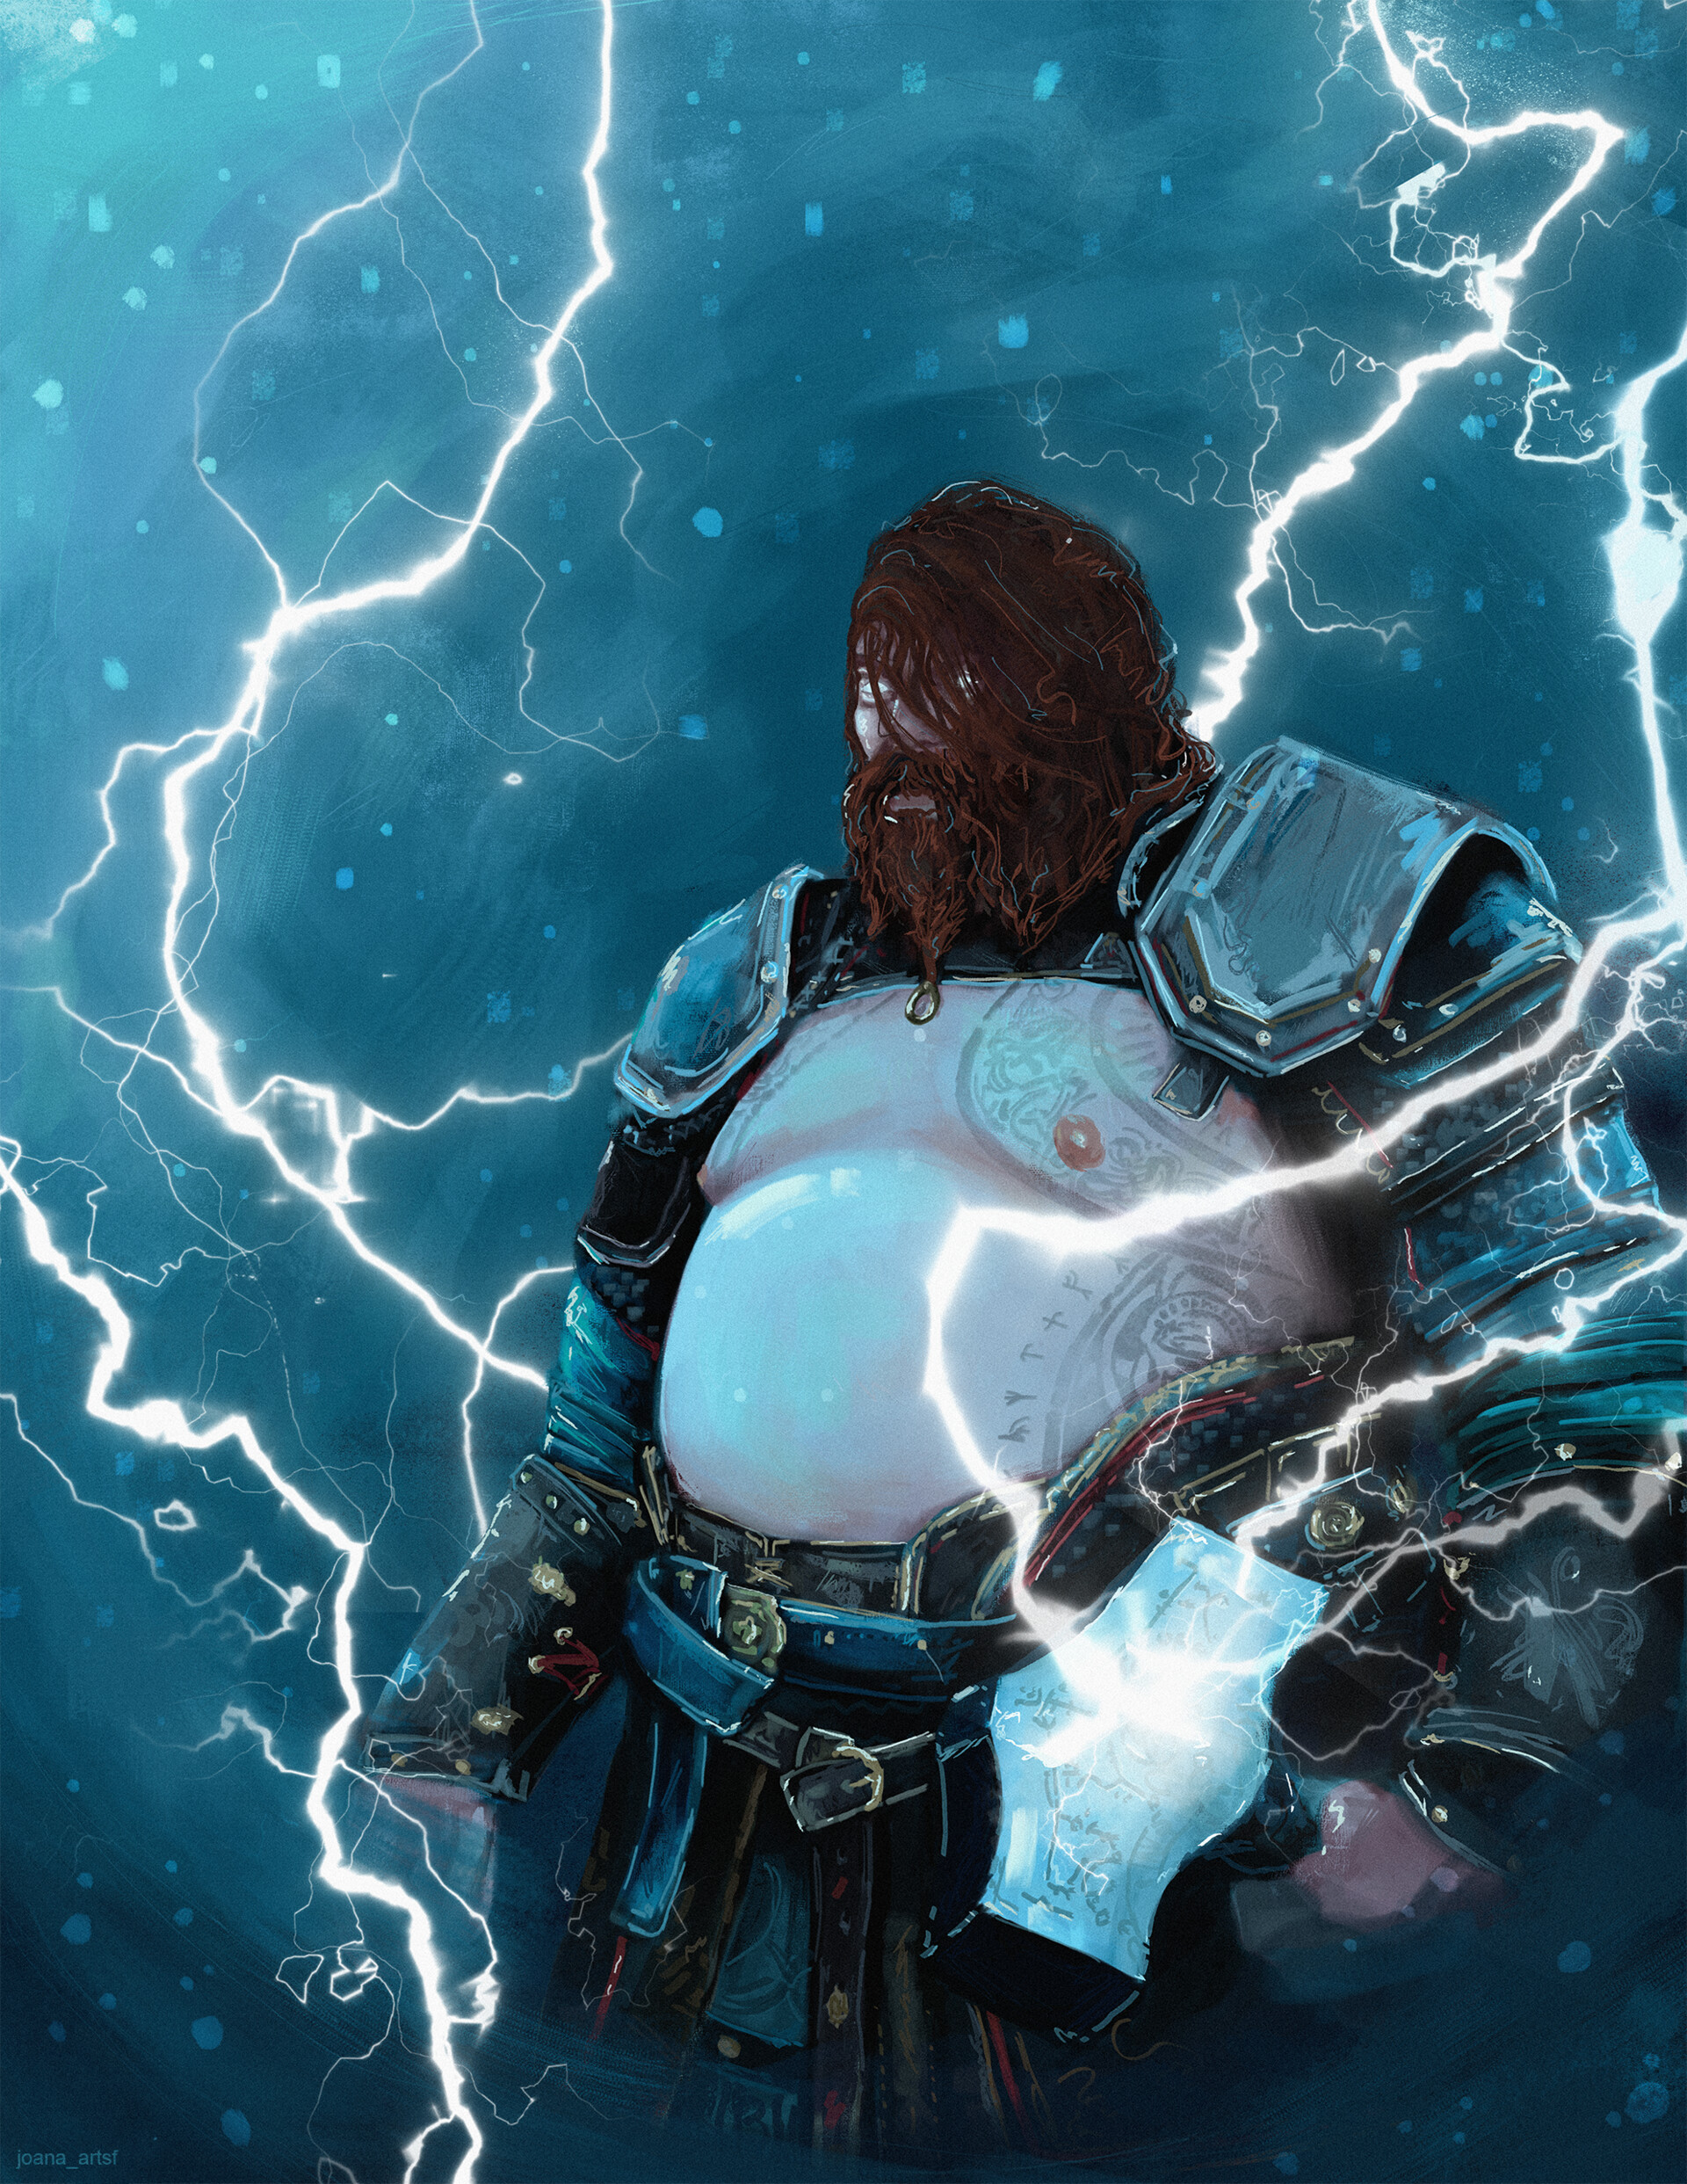 ArtStation - The Broken God, Thor - God of War: Ragnarök Fanart